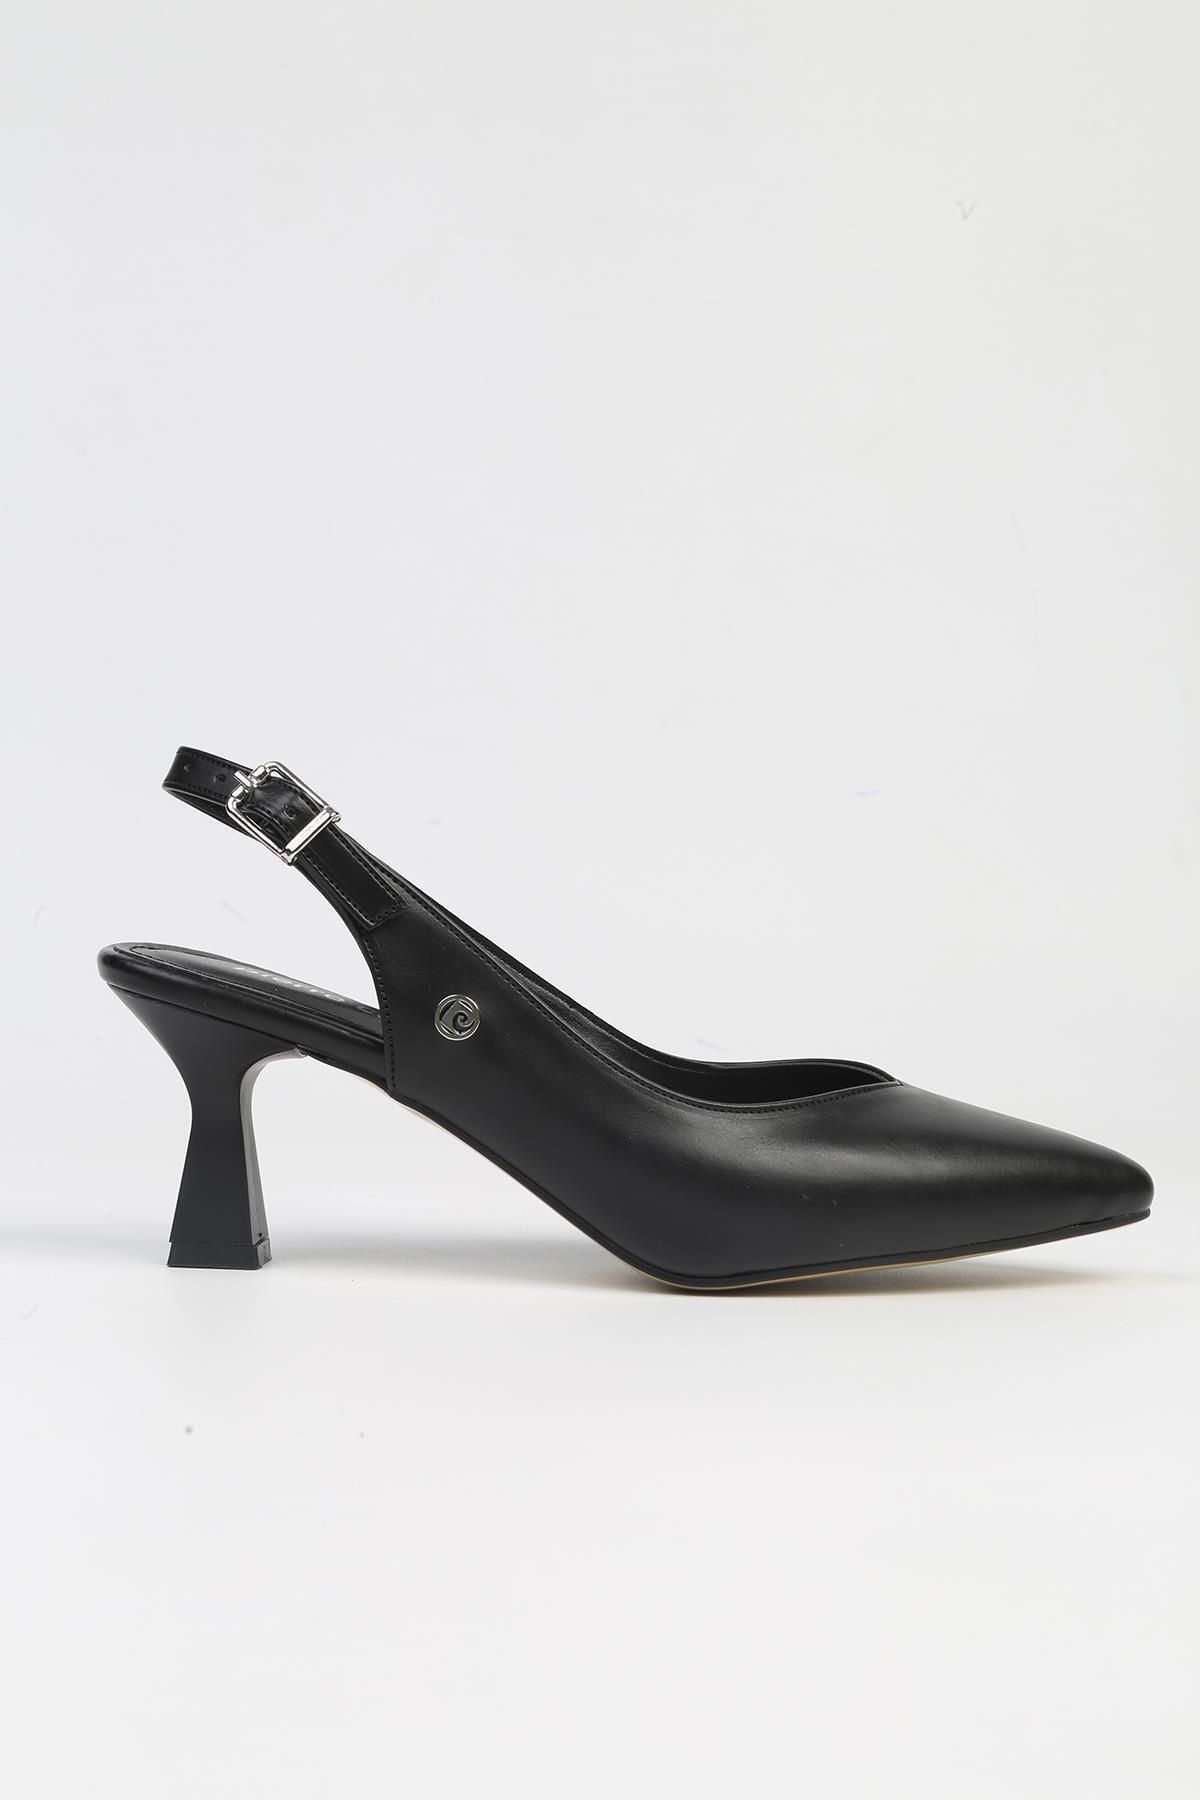 Pierre Cardin ® | PC-53125- 3829 Siyah-Kadın Topuklu Ayakkabı